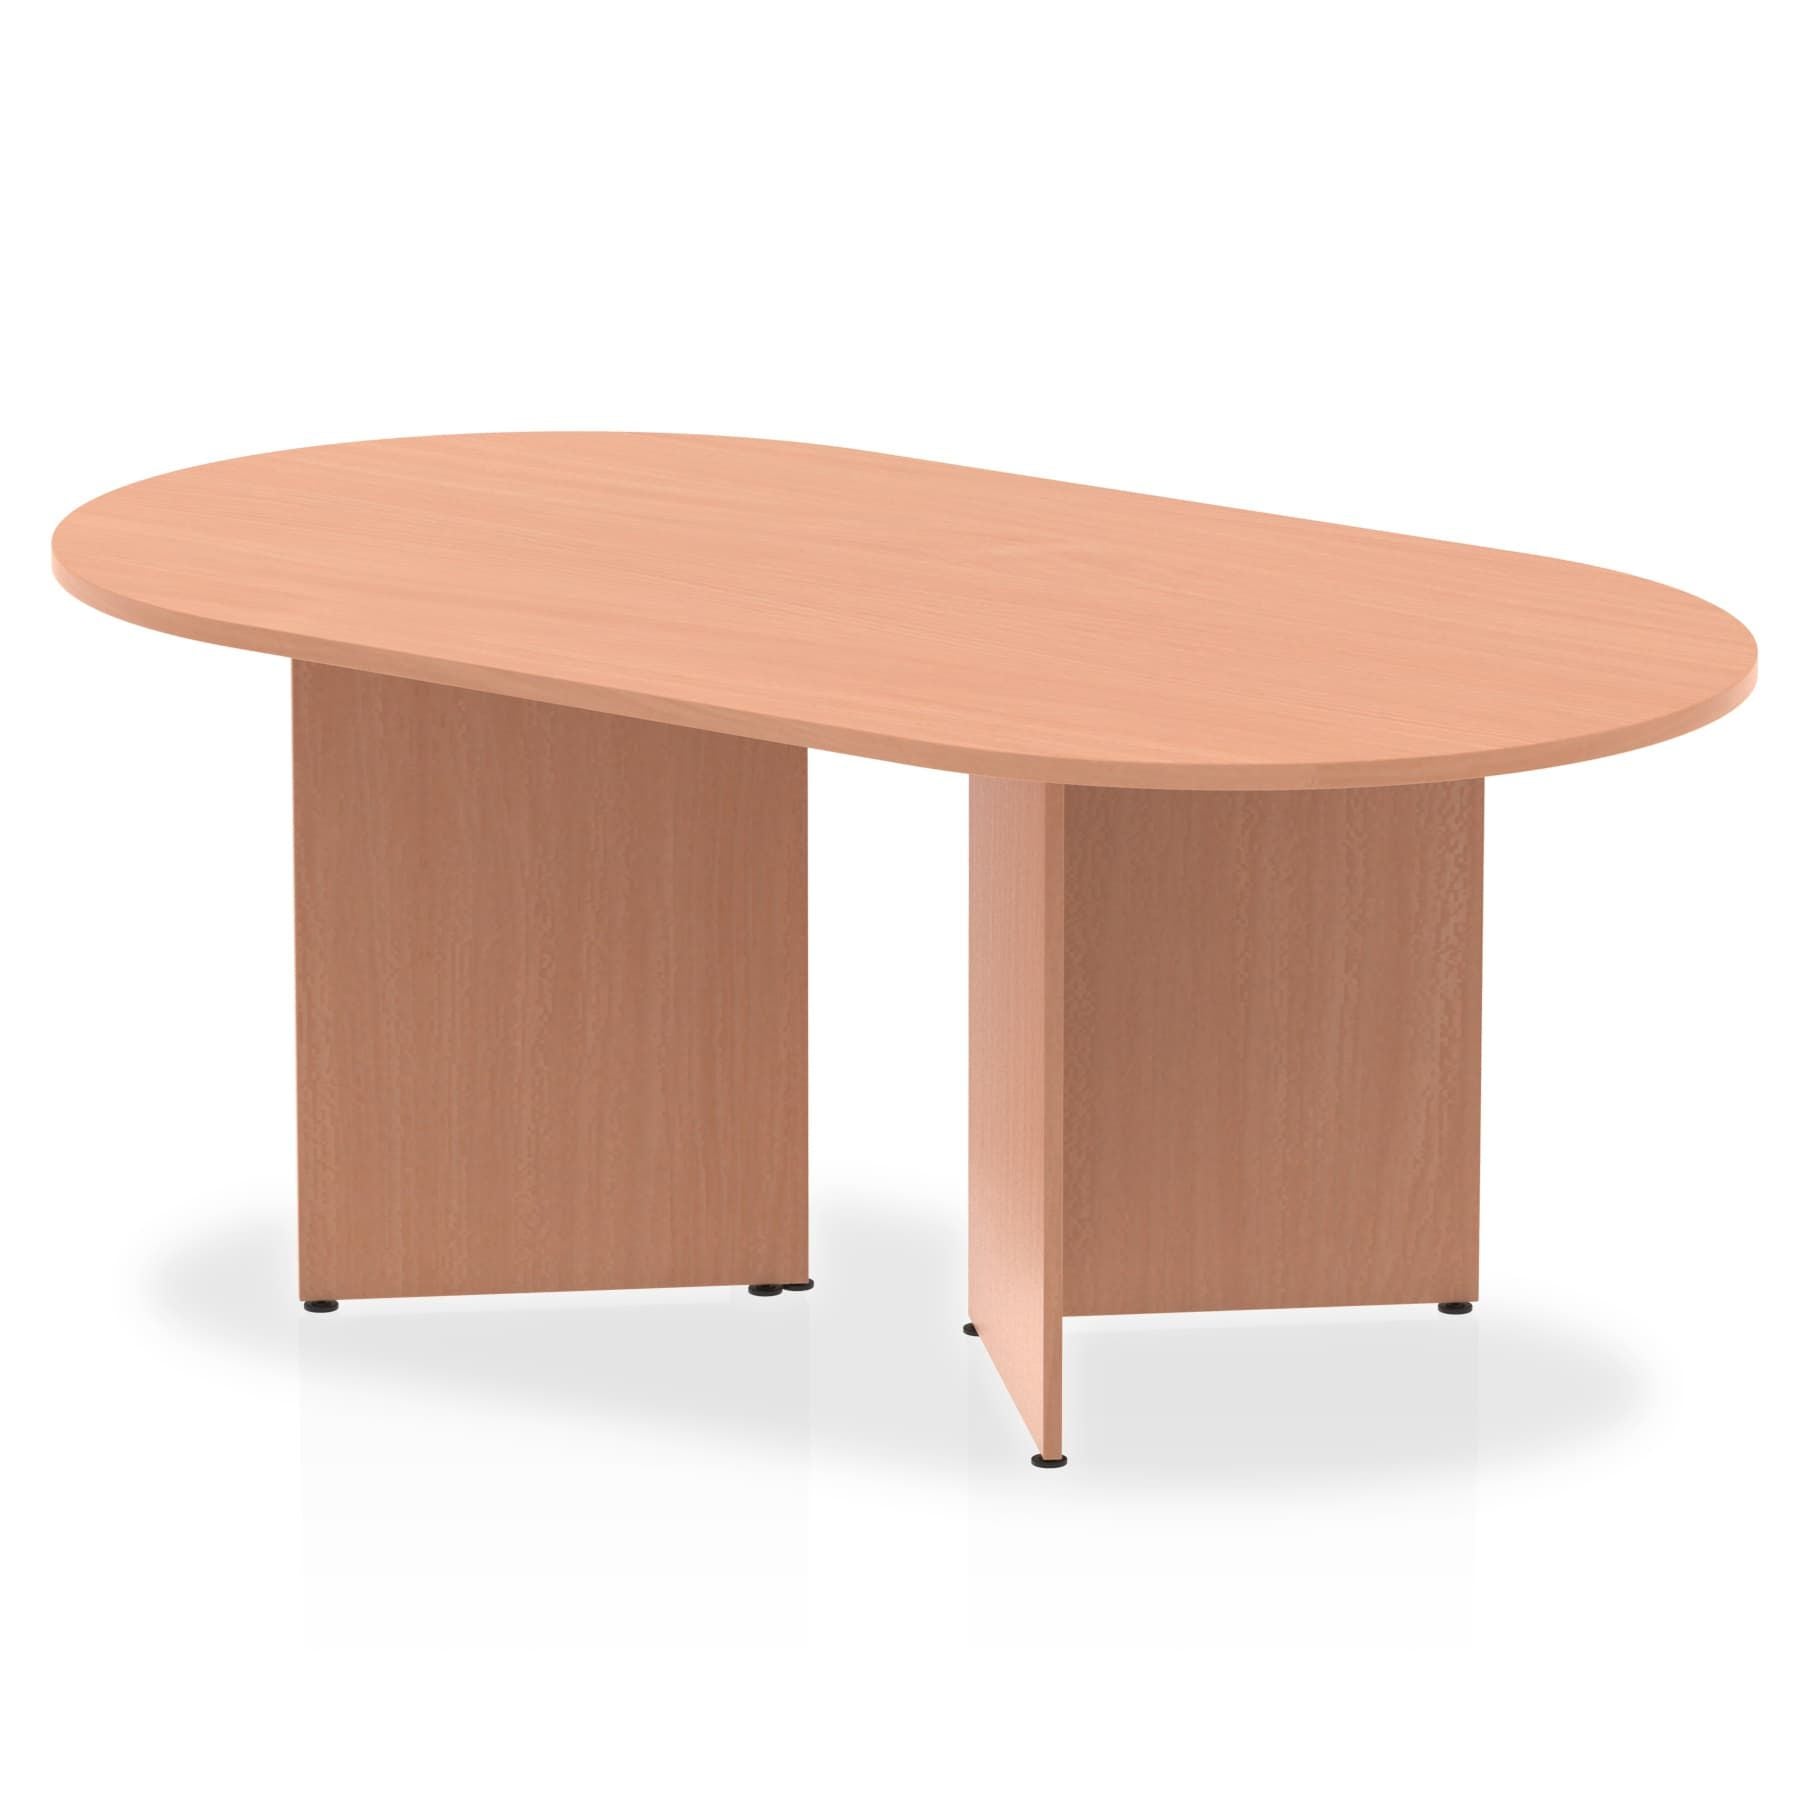 Photos - Office Desk Dynamic Office Solutions Impulse Boardroom Table Arrowhead Leg I003408 